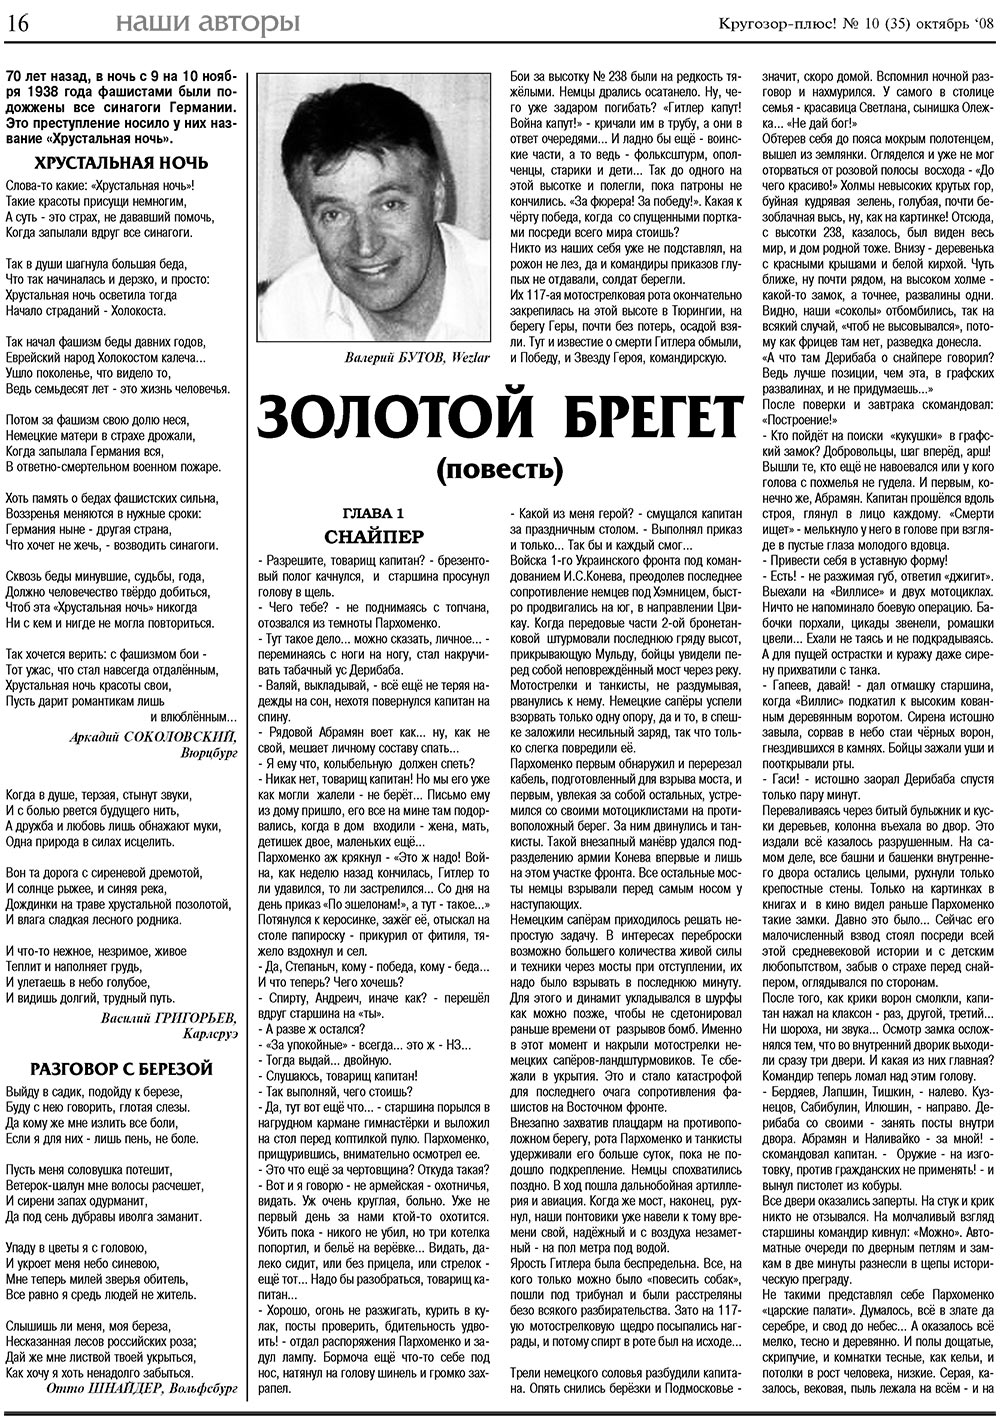 Кругозор плюс!, газета. 2008 №10 стр.16